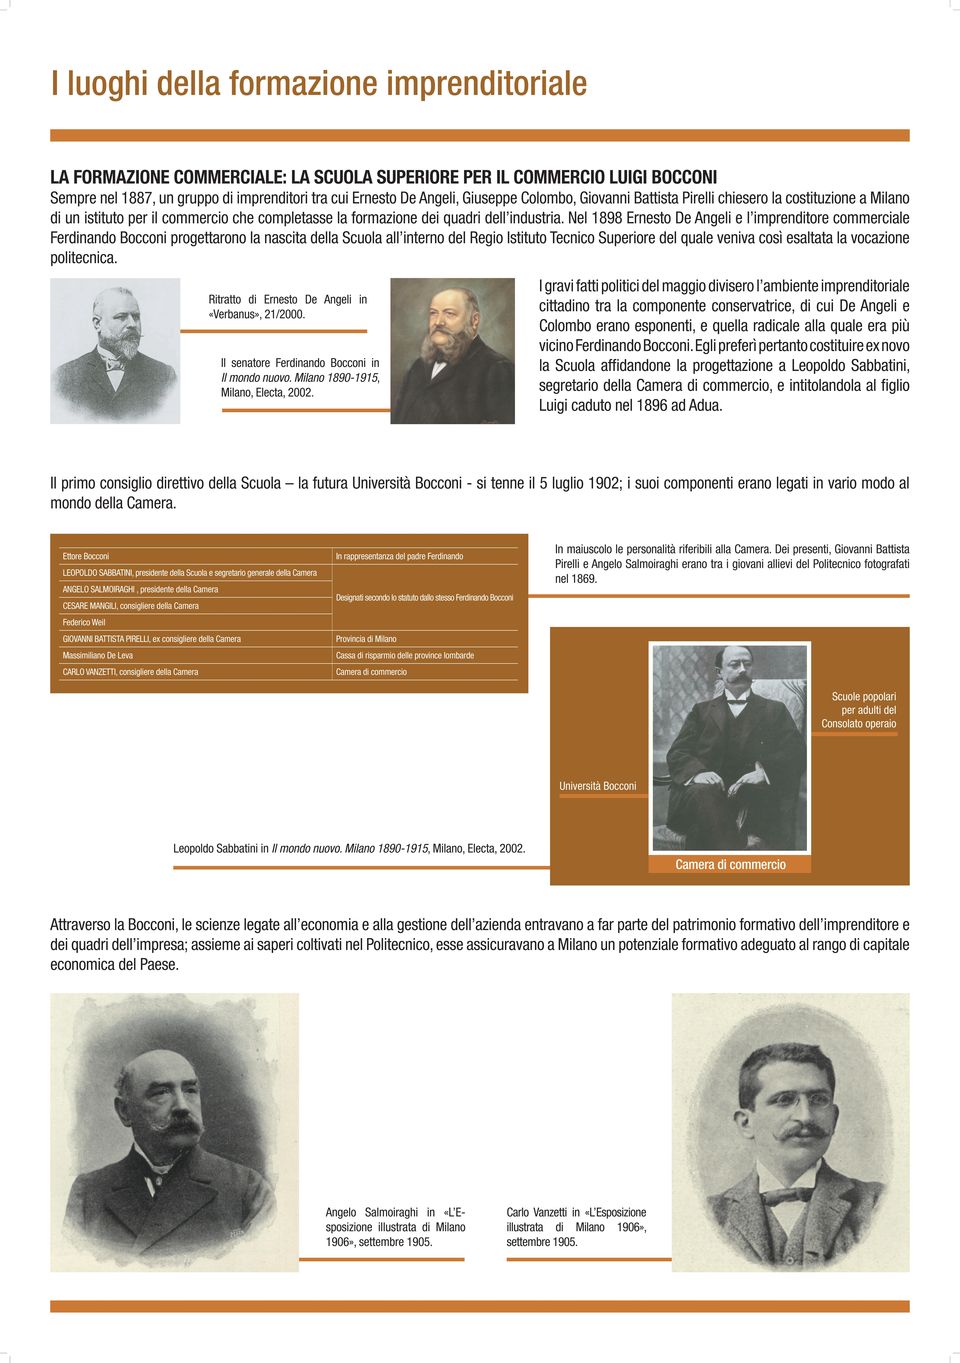 Nel 1898 Ernesto De Angeli e l imprenditore commerciale Ferdinando Bocconi progettarono la nascita della Scuola all interno del Regio Istituto Tecnico Superiore del quale veniva così esaltata la